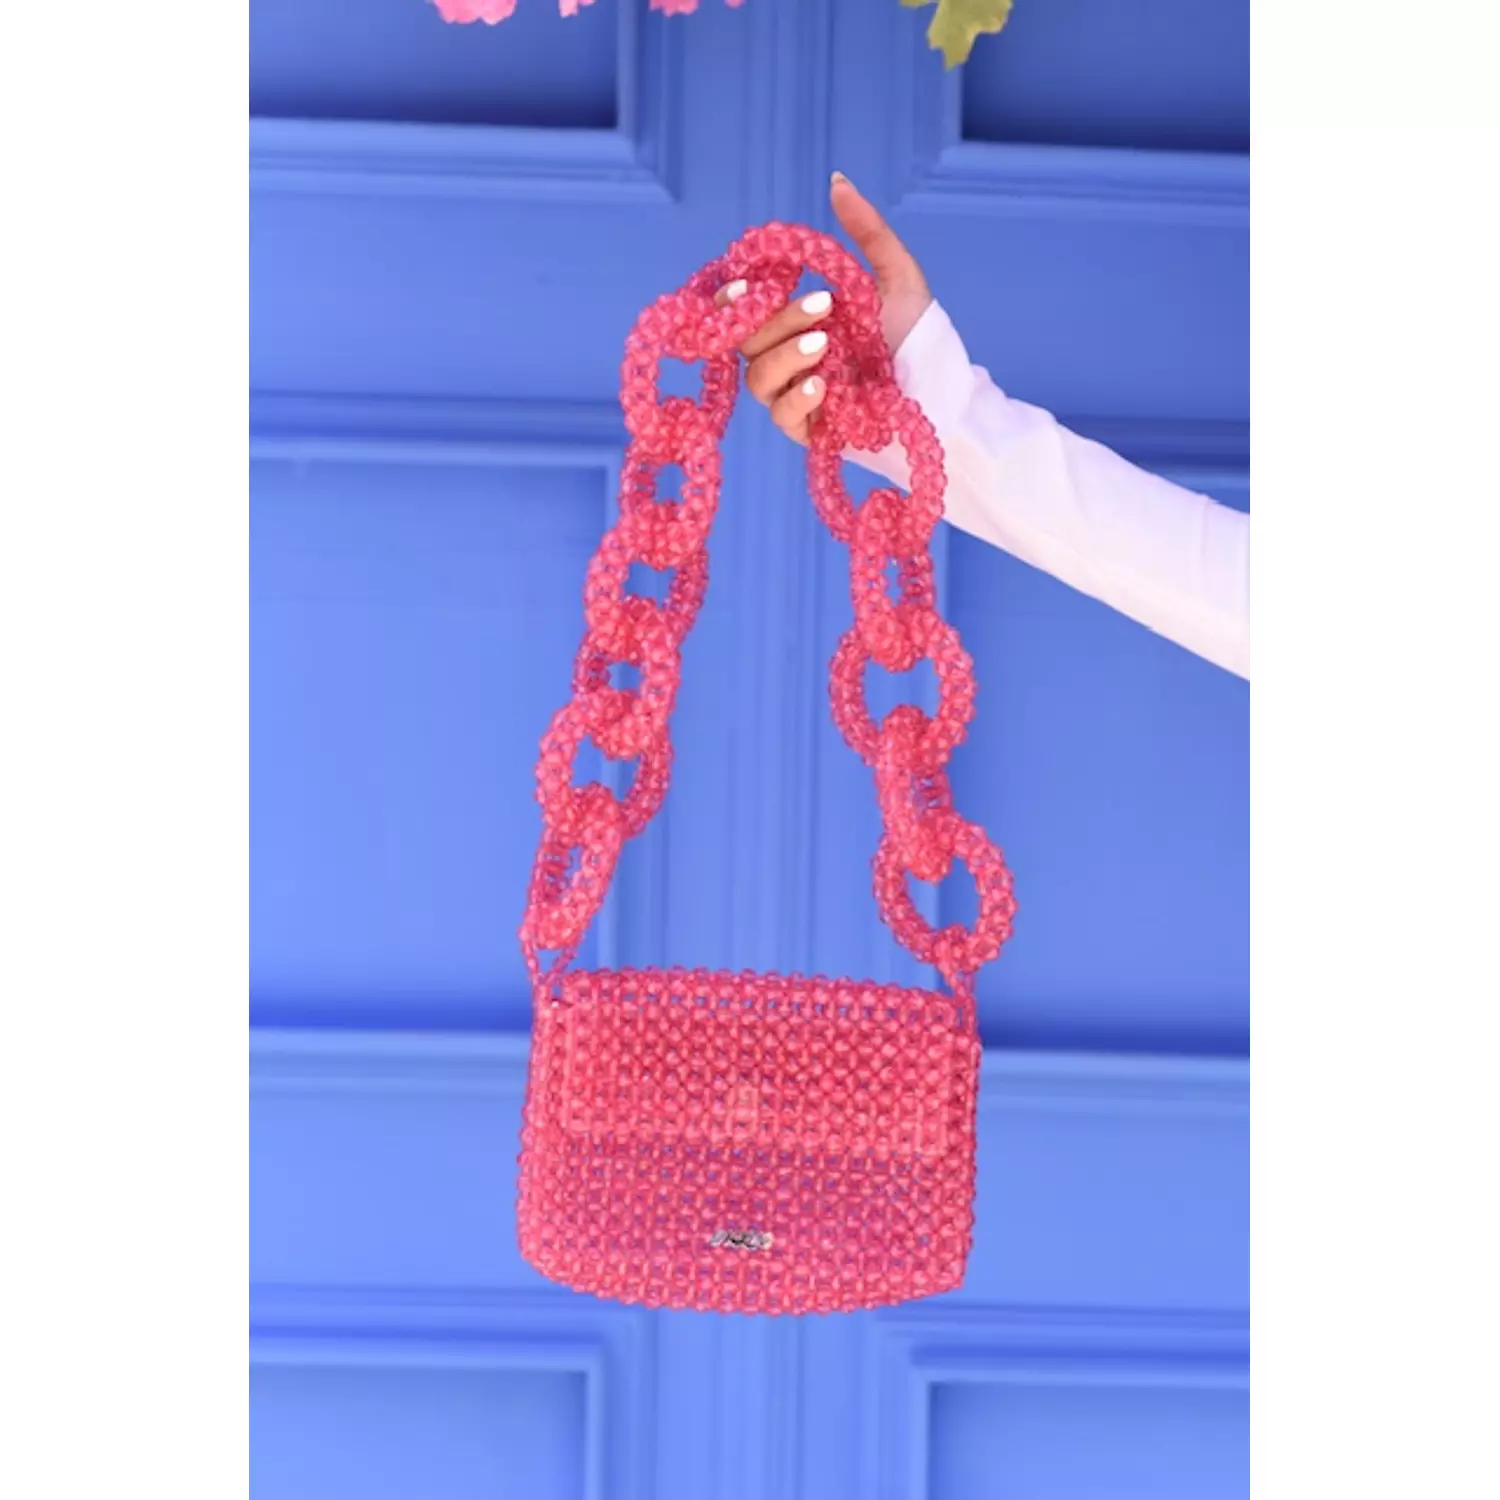 PINK beads shoulder bag 2